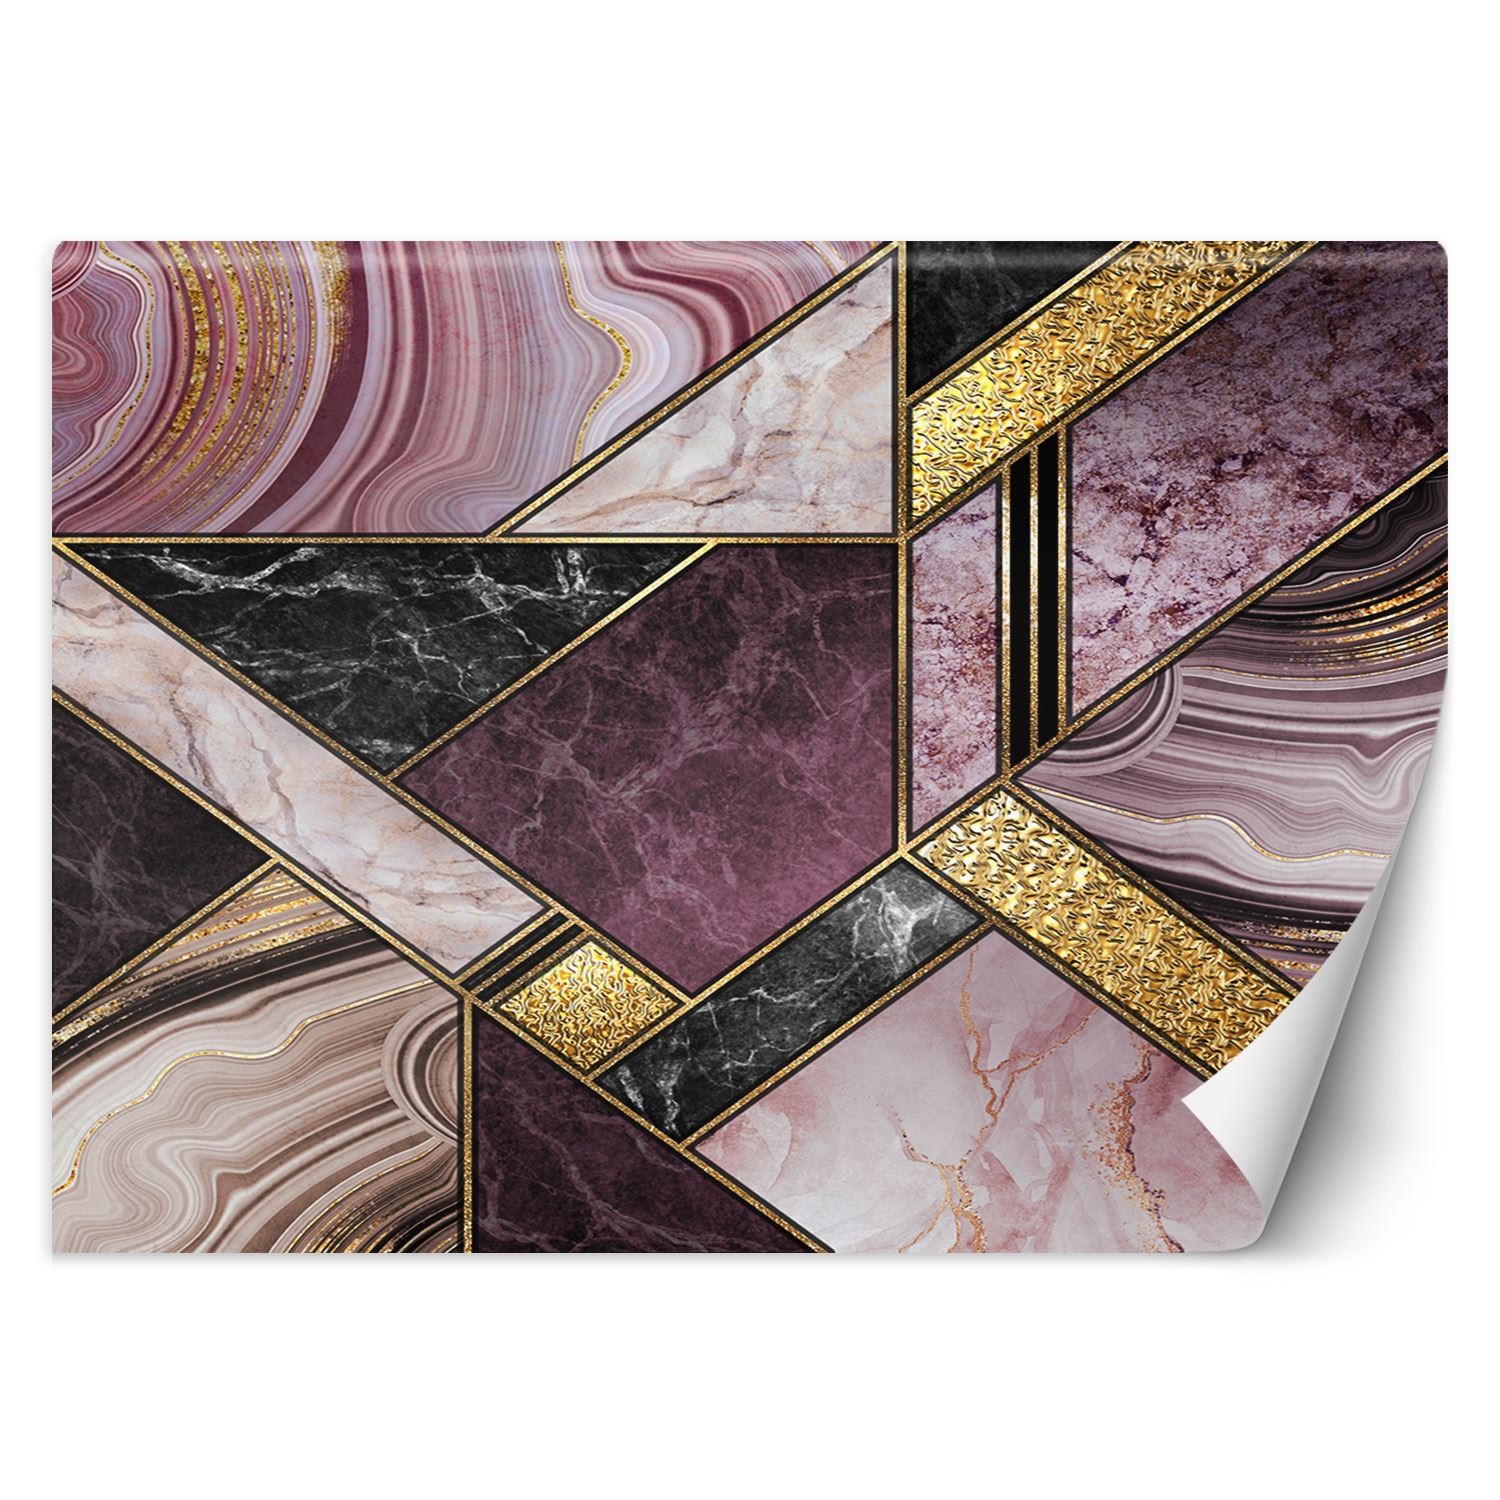 Trend24 – Behang – Marmeren Abstract – Vliesbehang – Fotobehang 3D – Behang Woonkamer – 350x245x2 cm – Incl. behanglijm